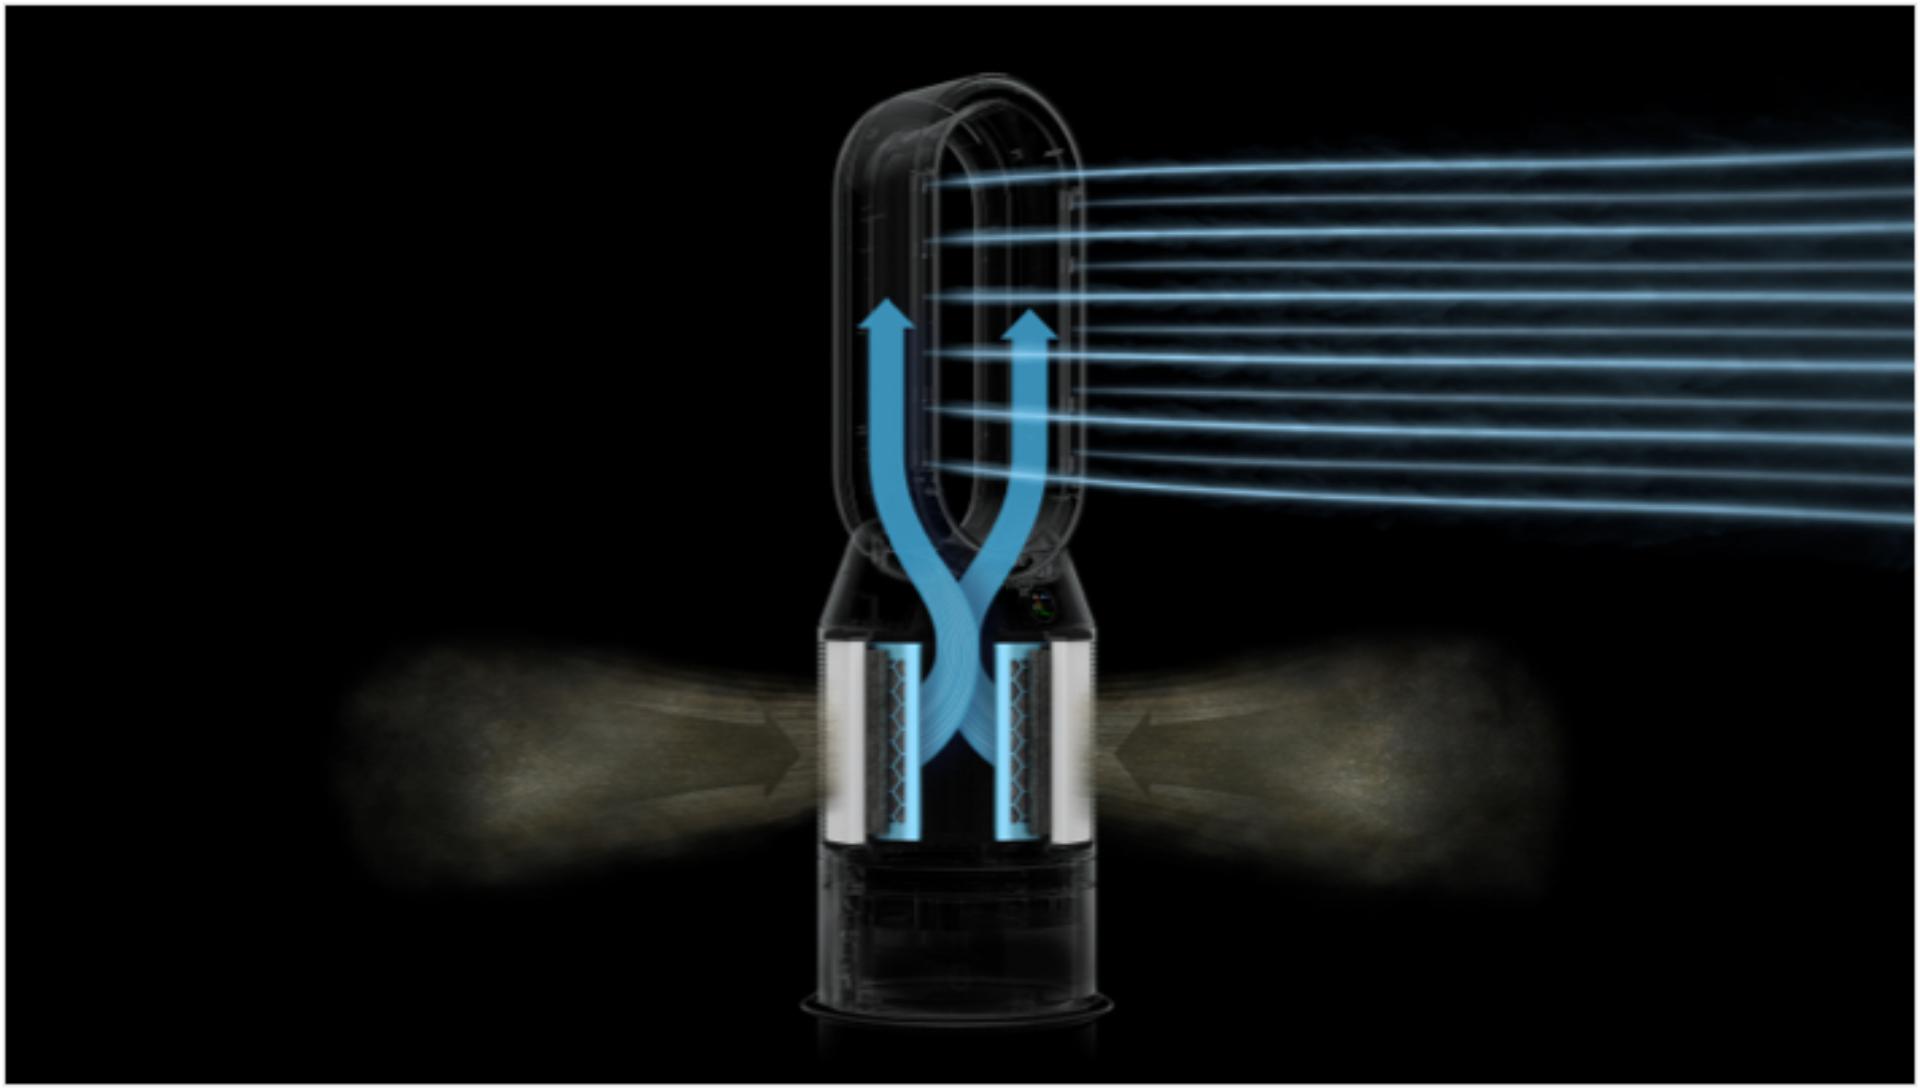 Náčrt čističky vzduchu so zvlhčovačom Dyson so šípkami znázorňujúcimi prúdenie vzduchu